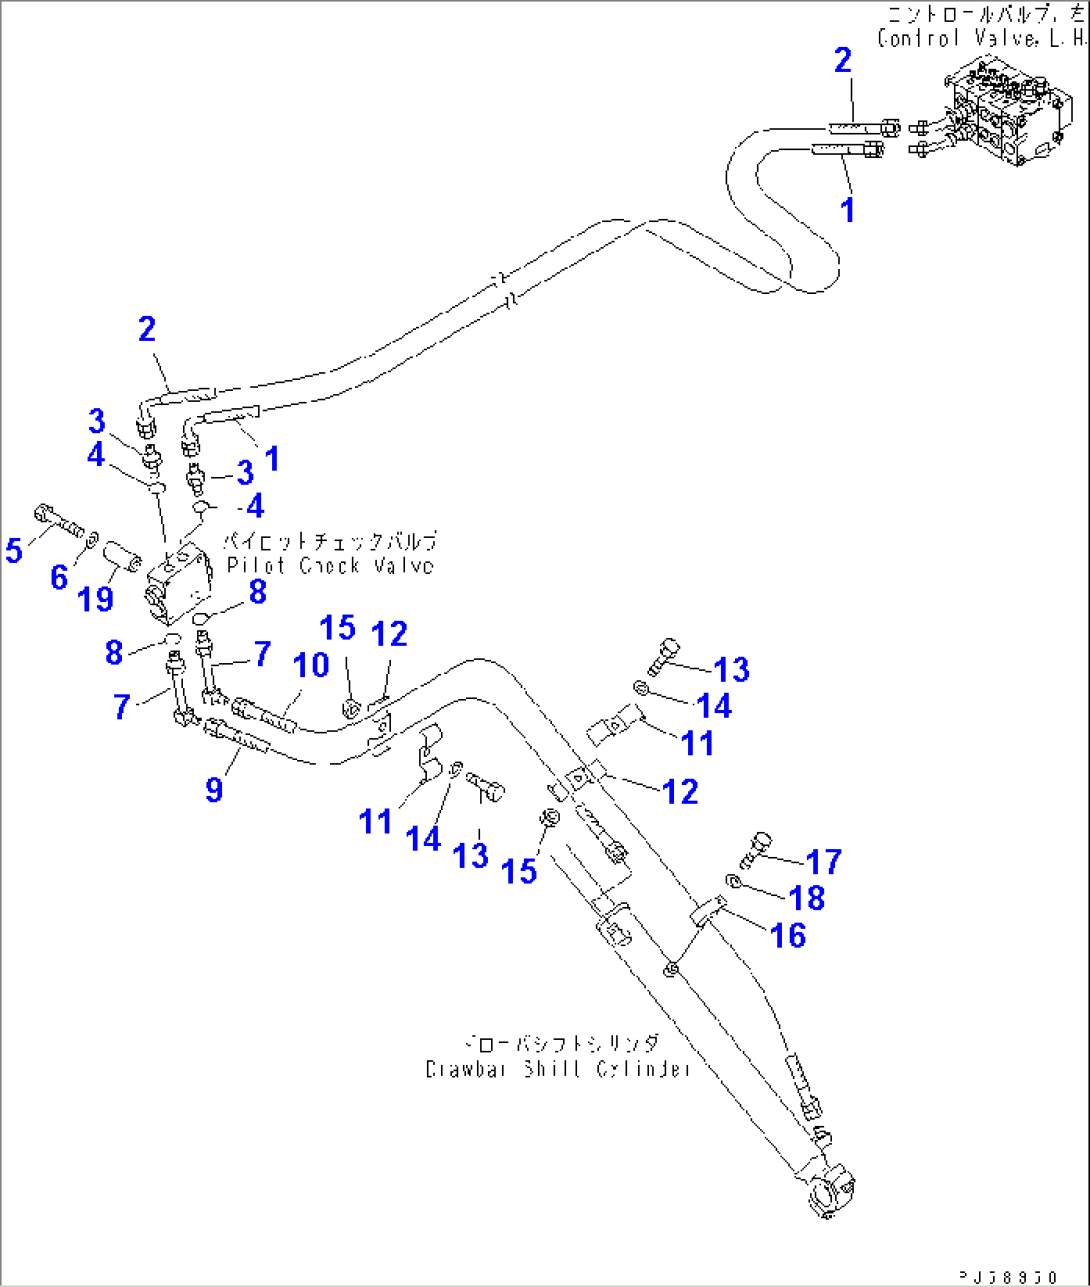 HYDRAULIC PIPING (DRAWBAR SHIFT CYLINDER LINE)